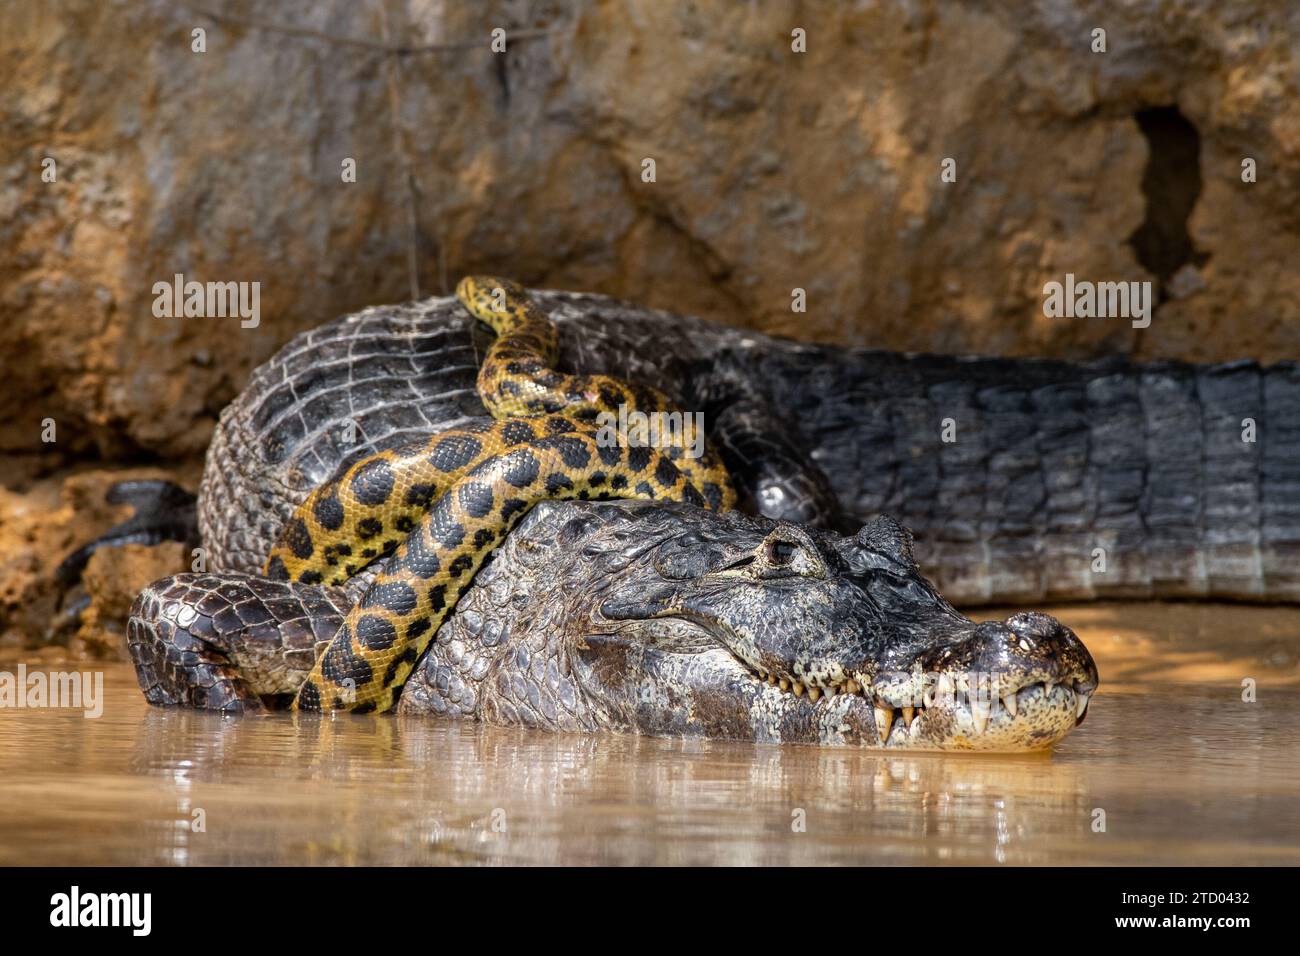 Anaconda versucht, den Alligator BRASILIEN zu jagen. SPANNENDE Bilder zeigen einen Kaiman-Alligator, der eine gelbe Anaconda wie eine Krawatte trägt. Die 1,2 Meter lange Stockfoto